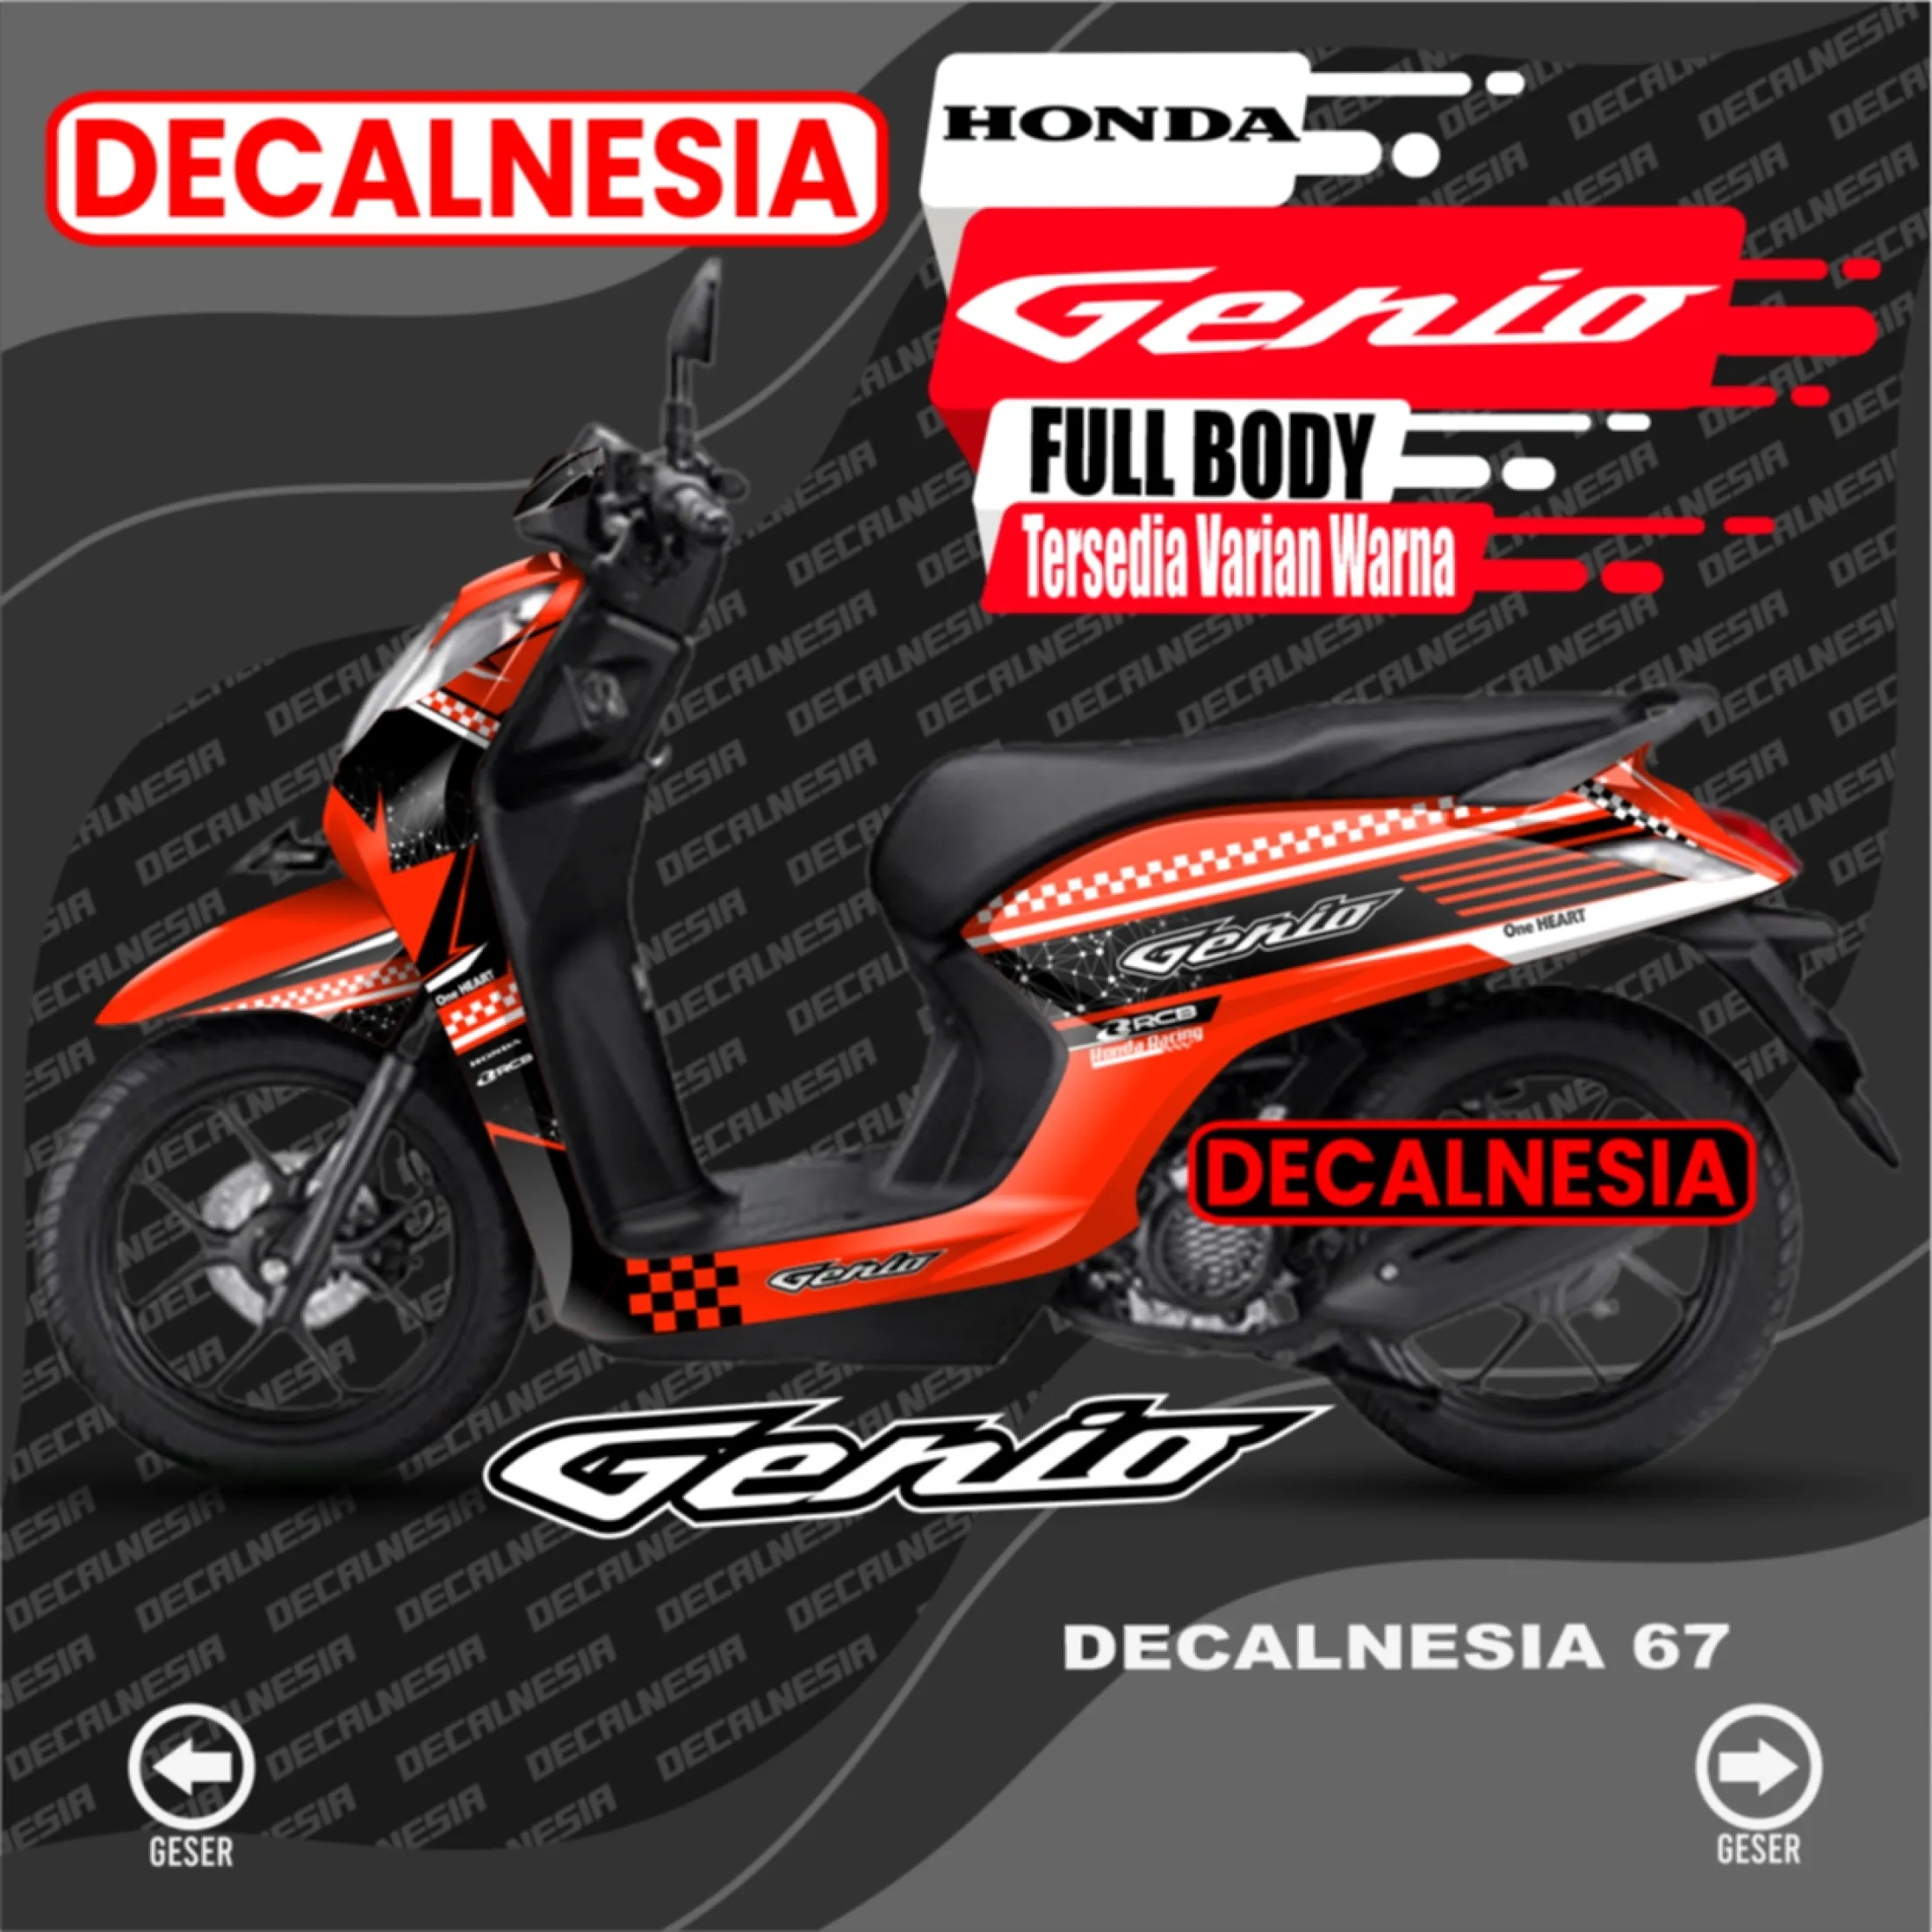 Decal Stiker Motor Honda Genio Decal Genio Stiker Genio Variasi Aksesoris Modifikasi Sticker Genio Full Body Lazada Indonesia